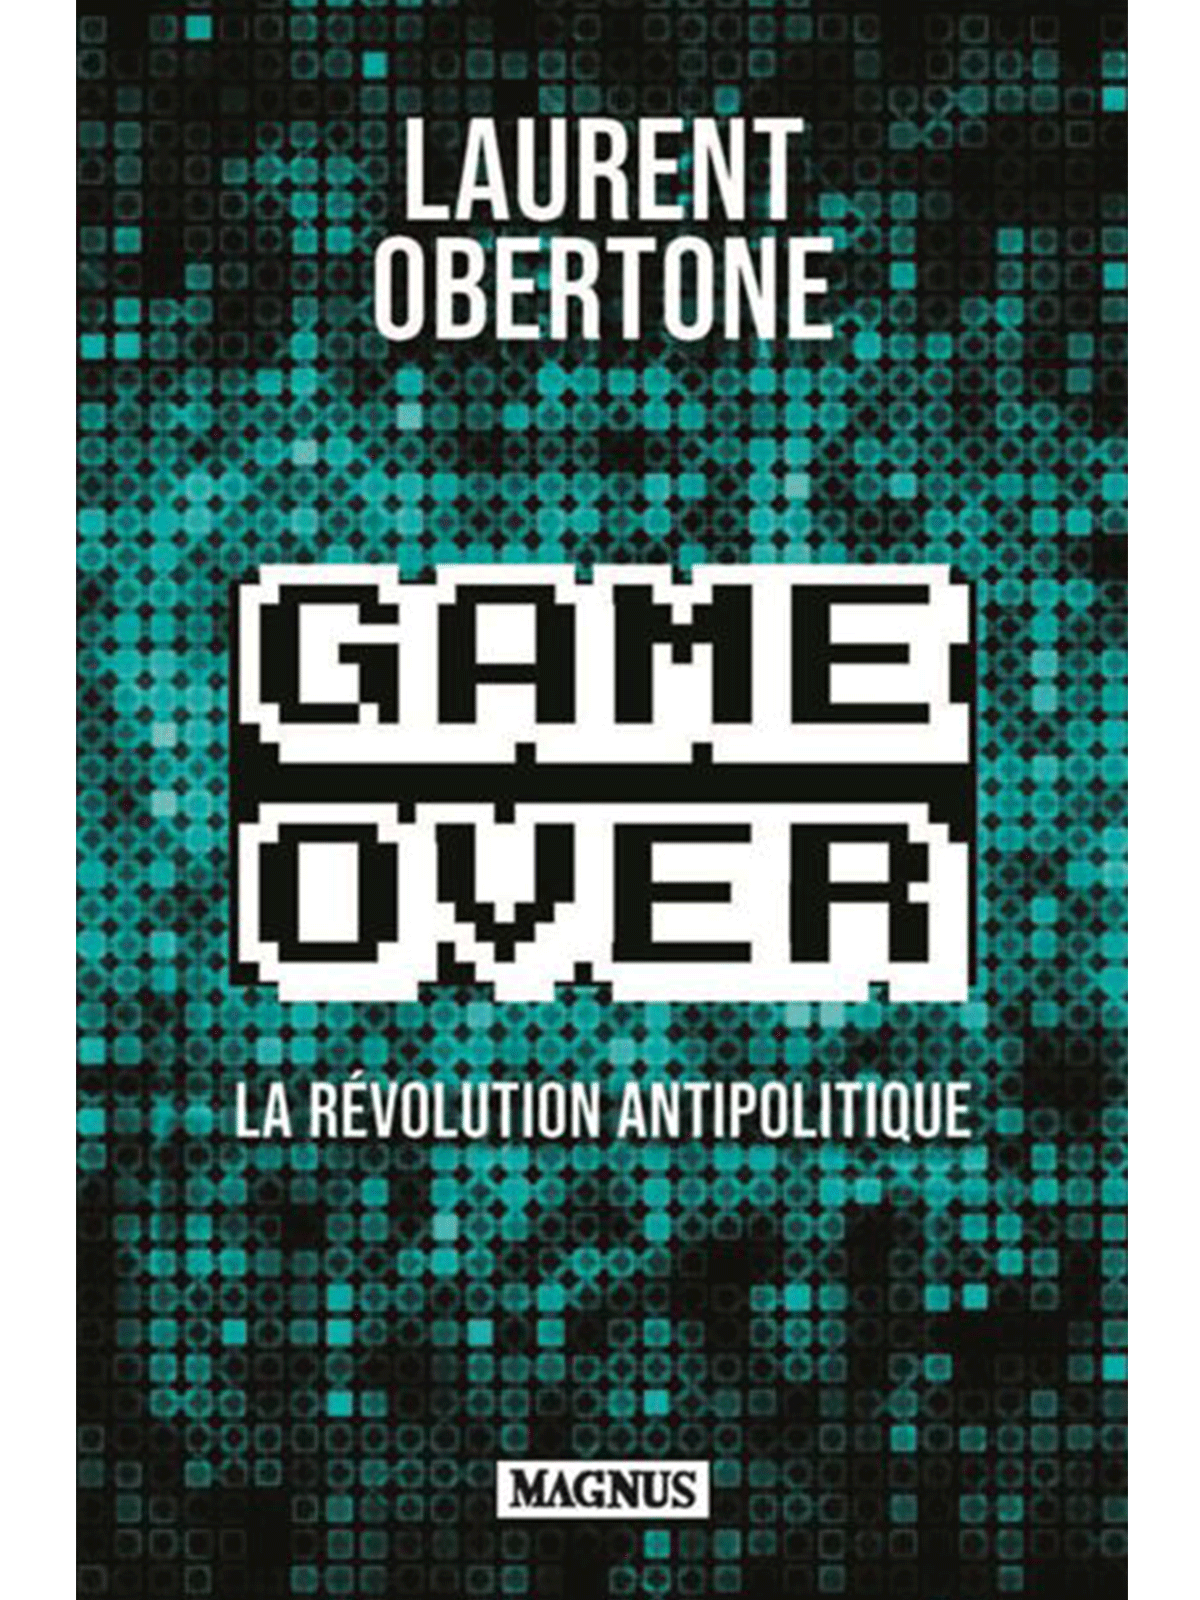 Laurent obertone : Game Over: La révolution antipolitique